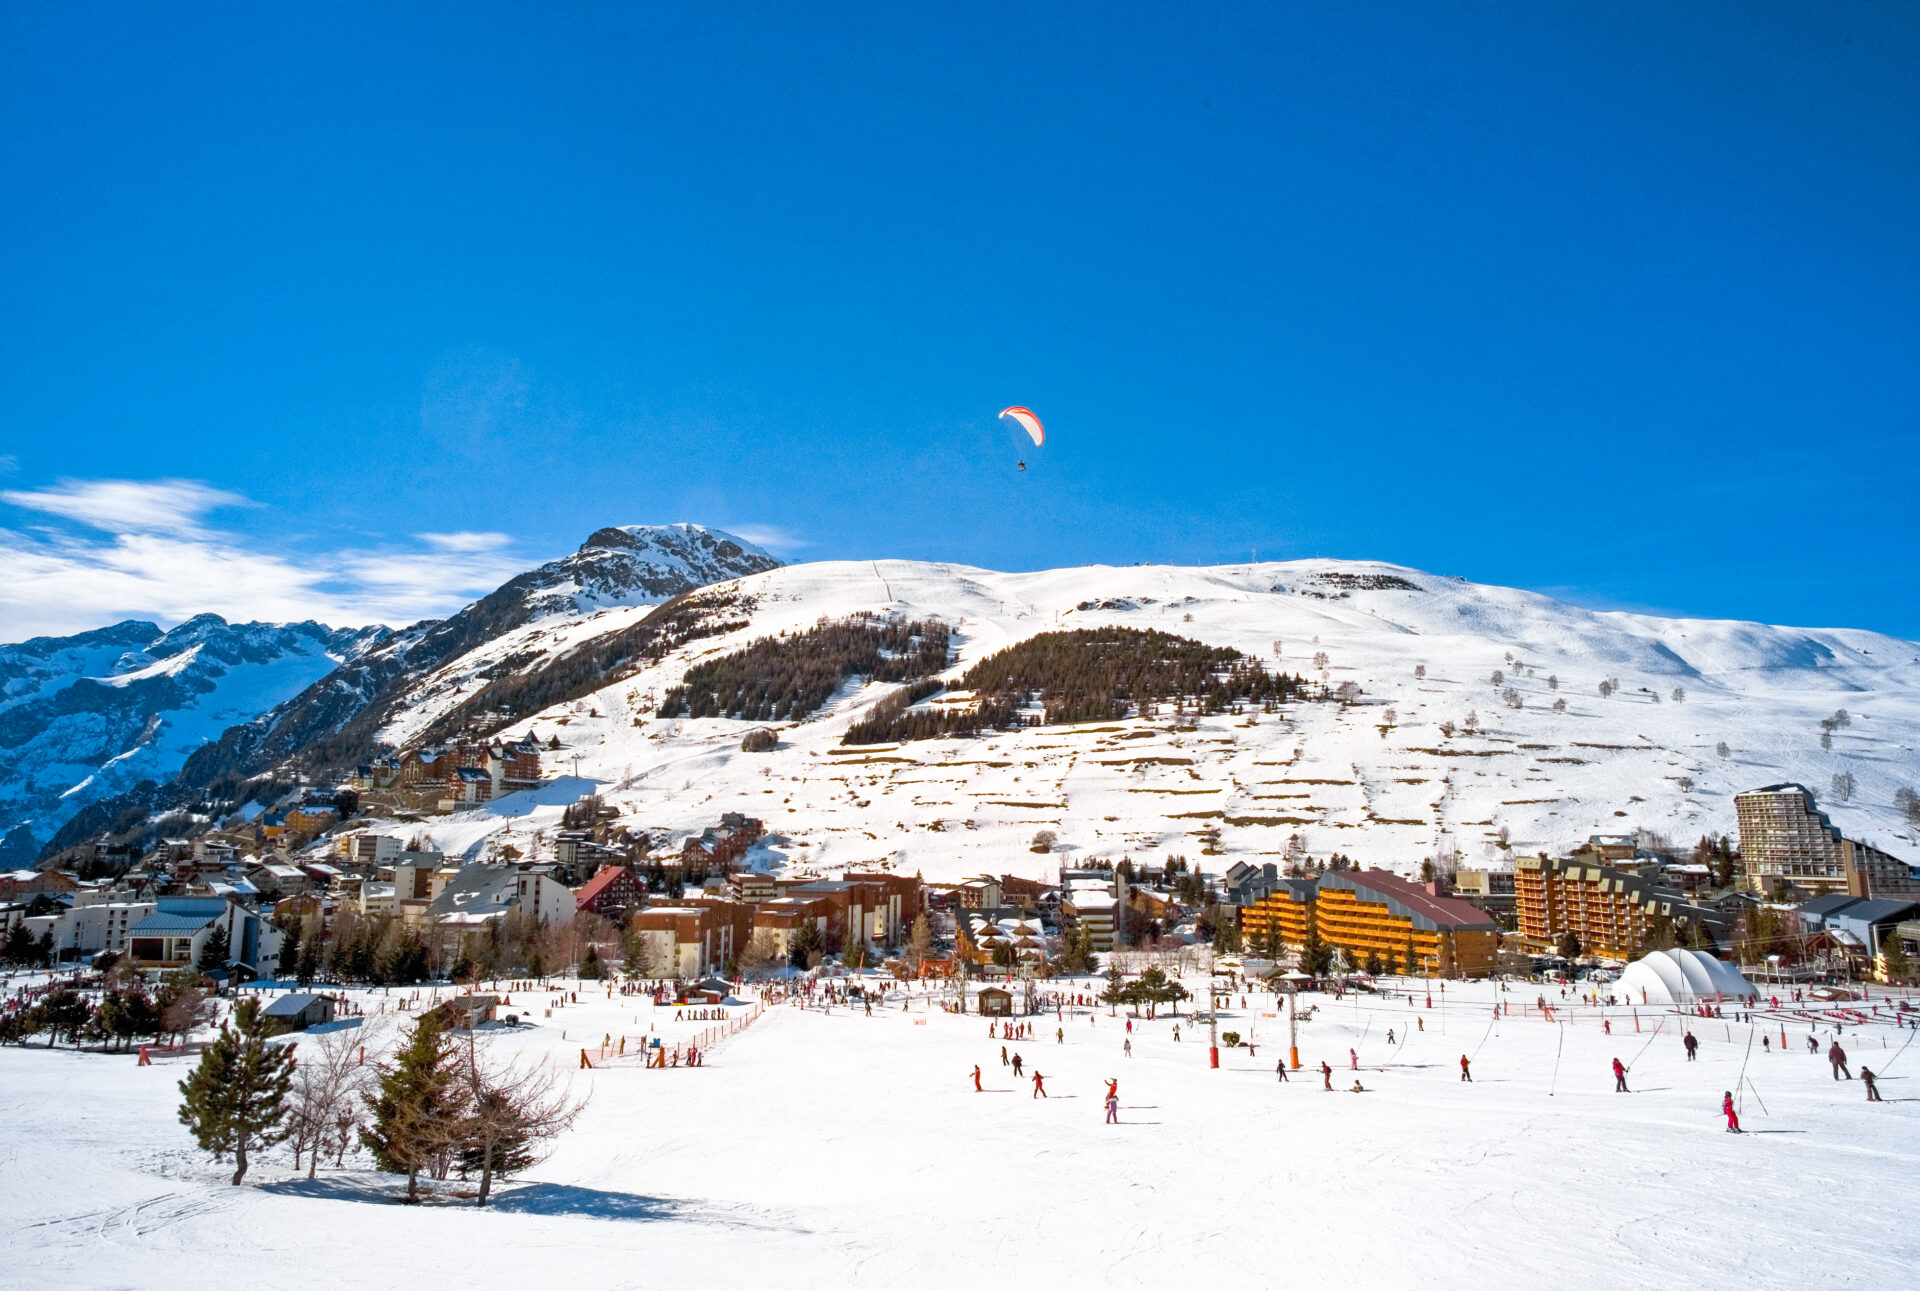 An image of Les Deux Alpes ski resort